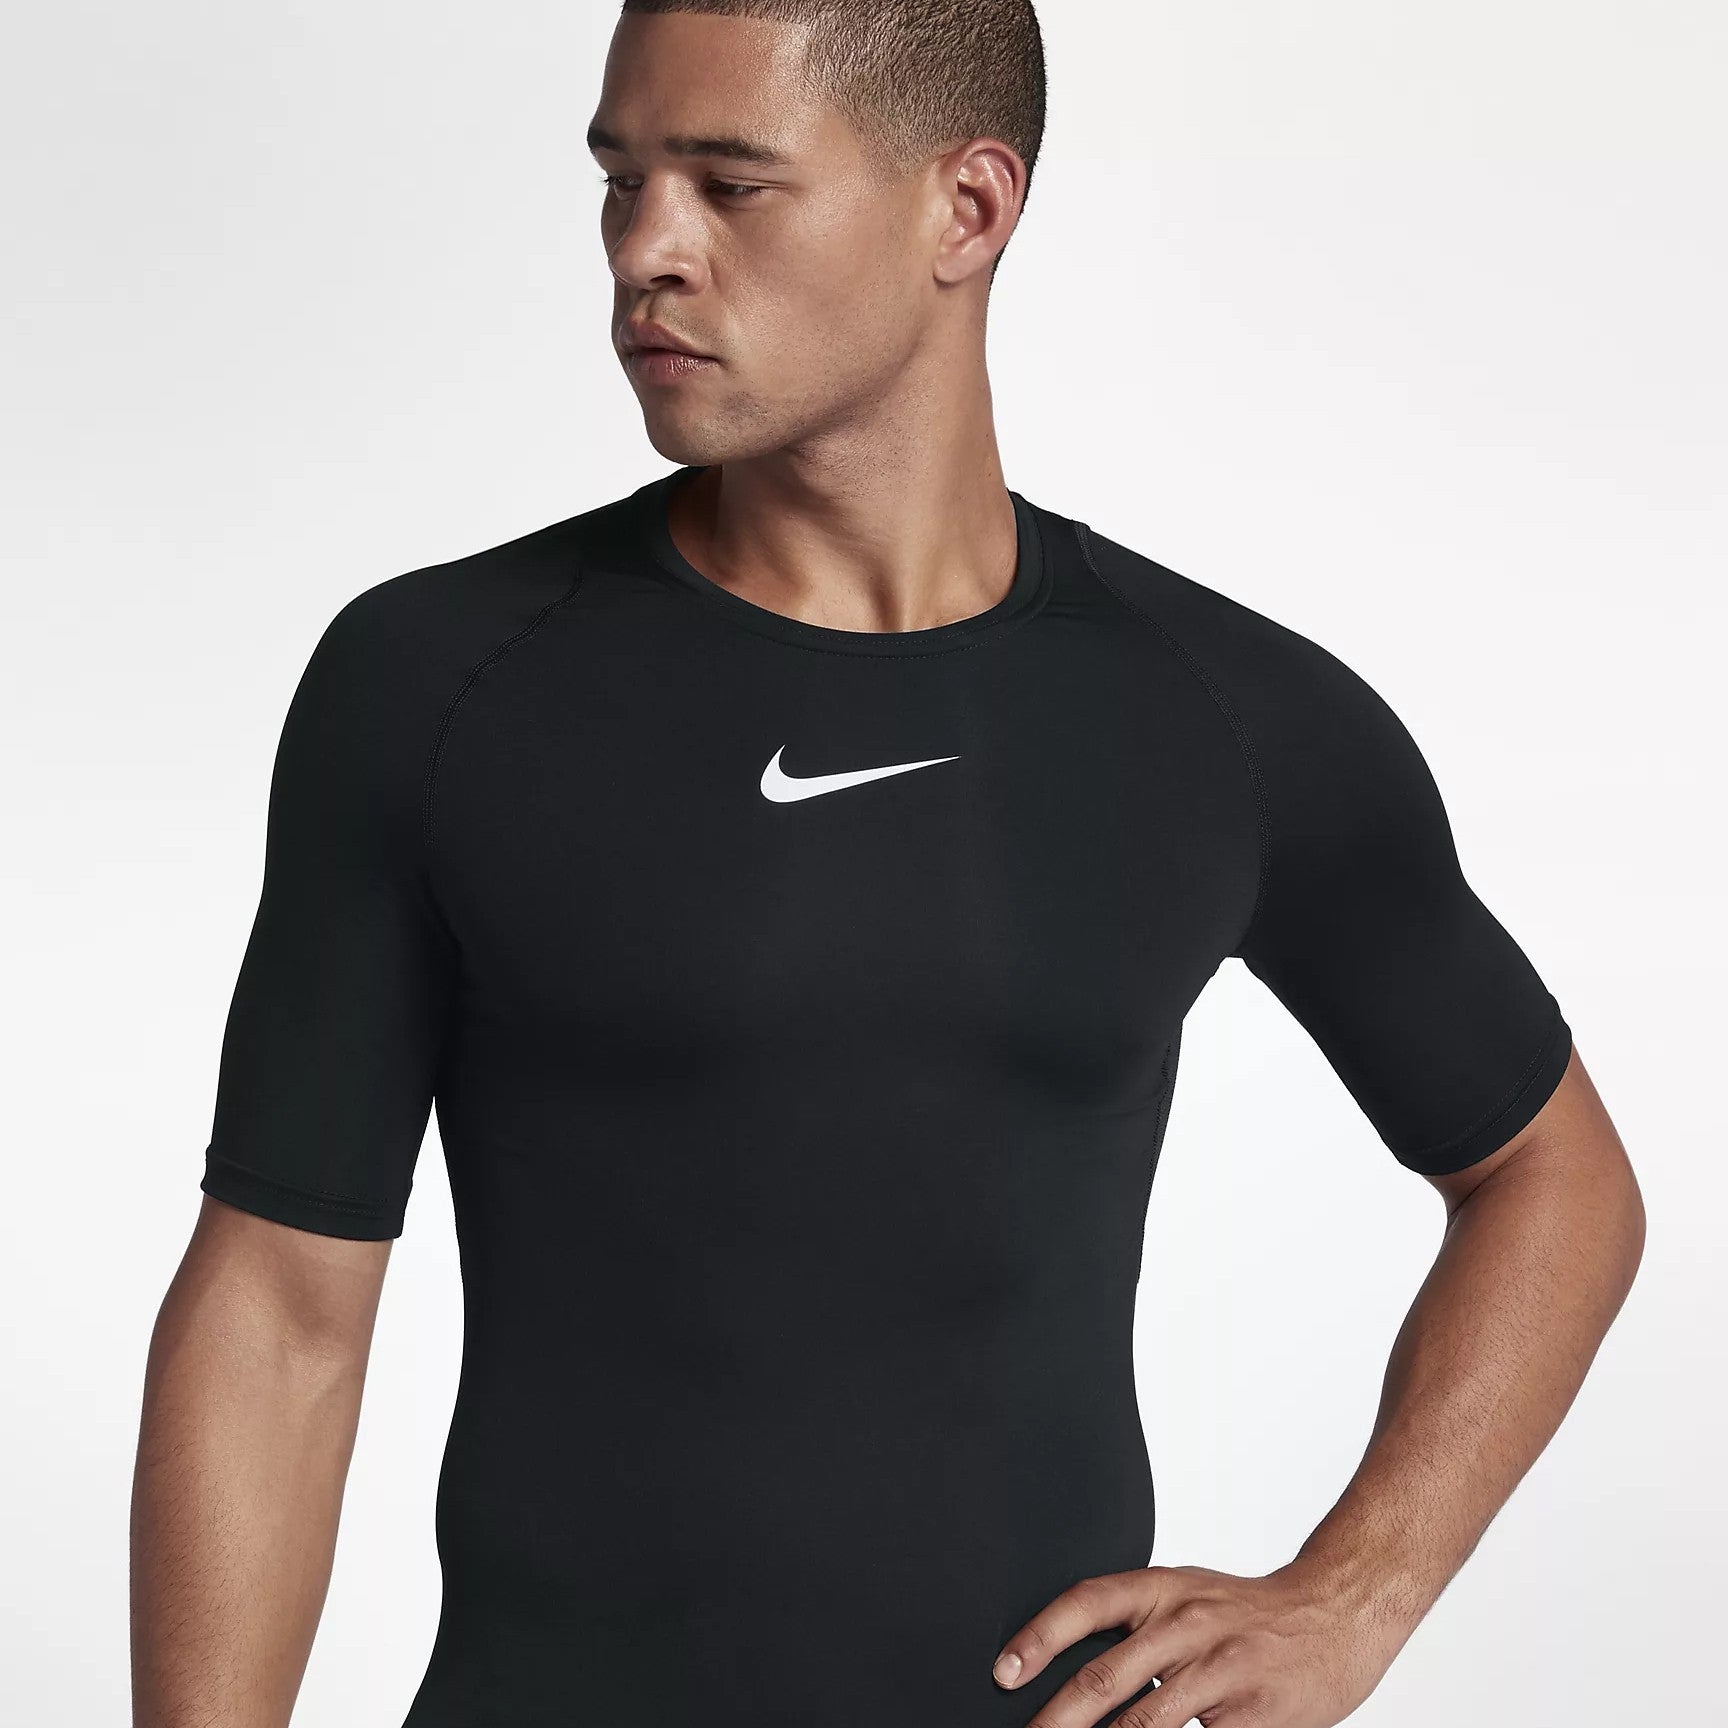 Men's Nike Short Sleeve Training - Black/White